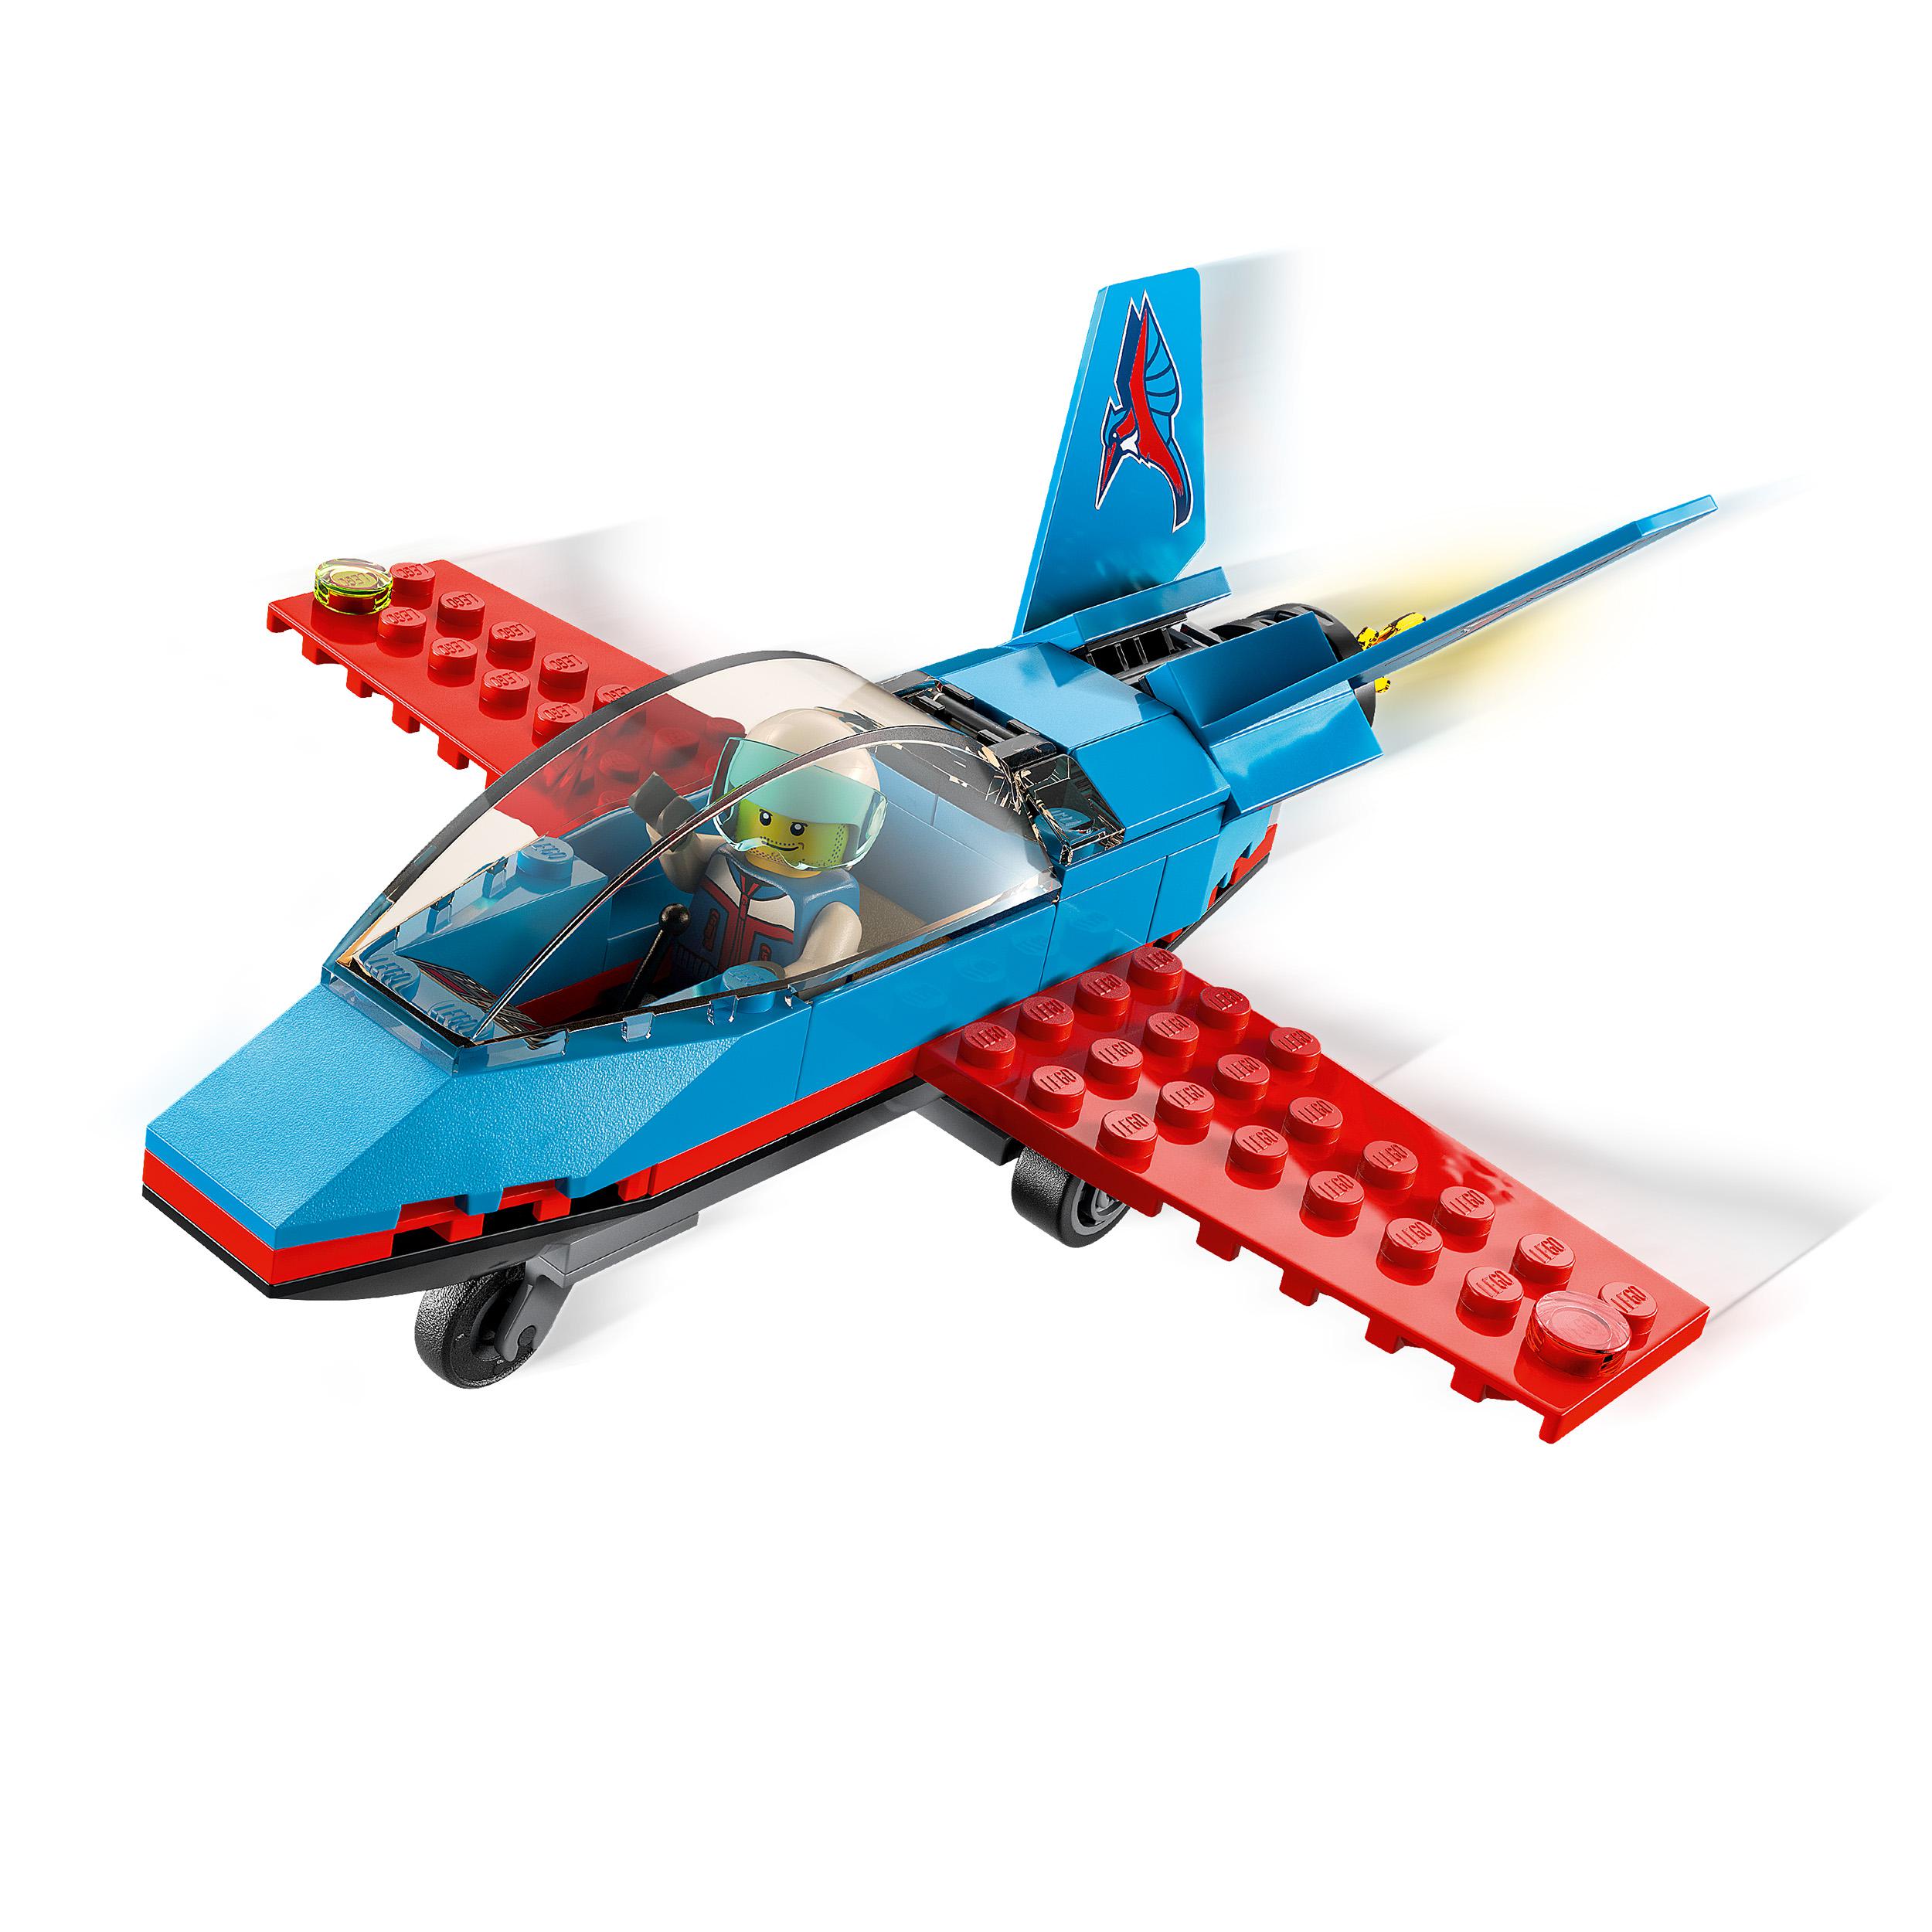 LEGO City Great Vehicles Aereo Acrobatico, Giocattolo con Minifigure del Pilota, 60323, , large